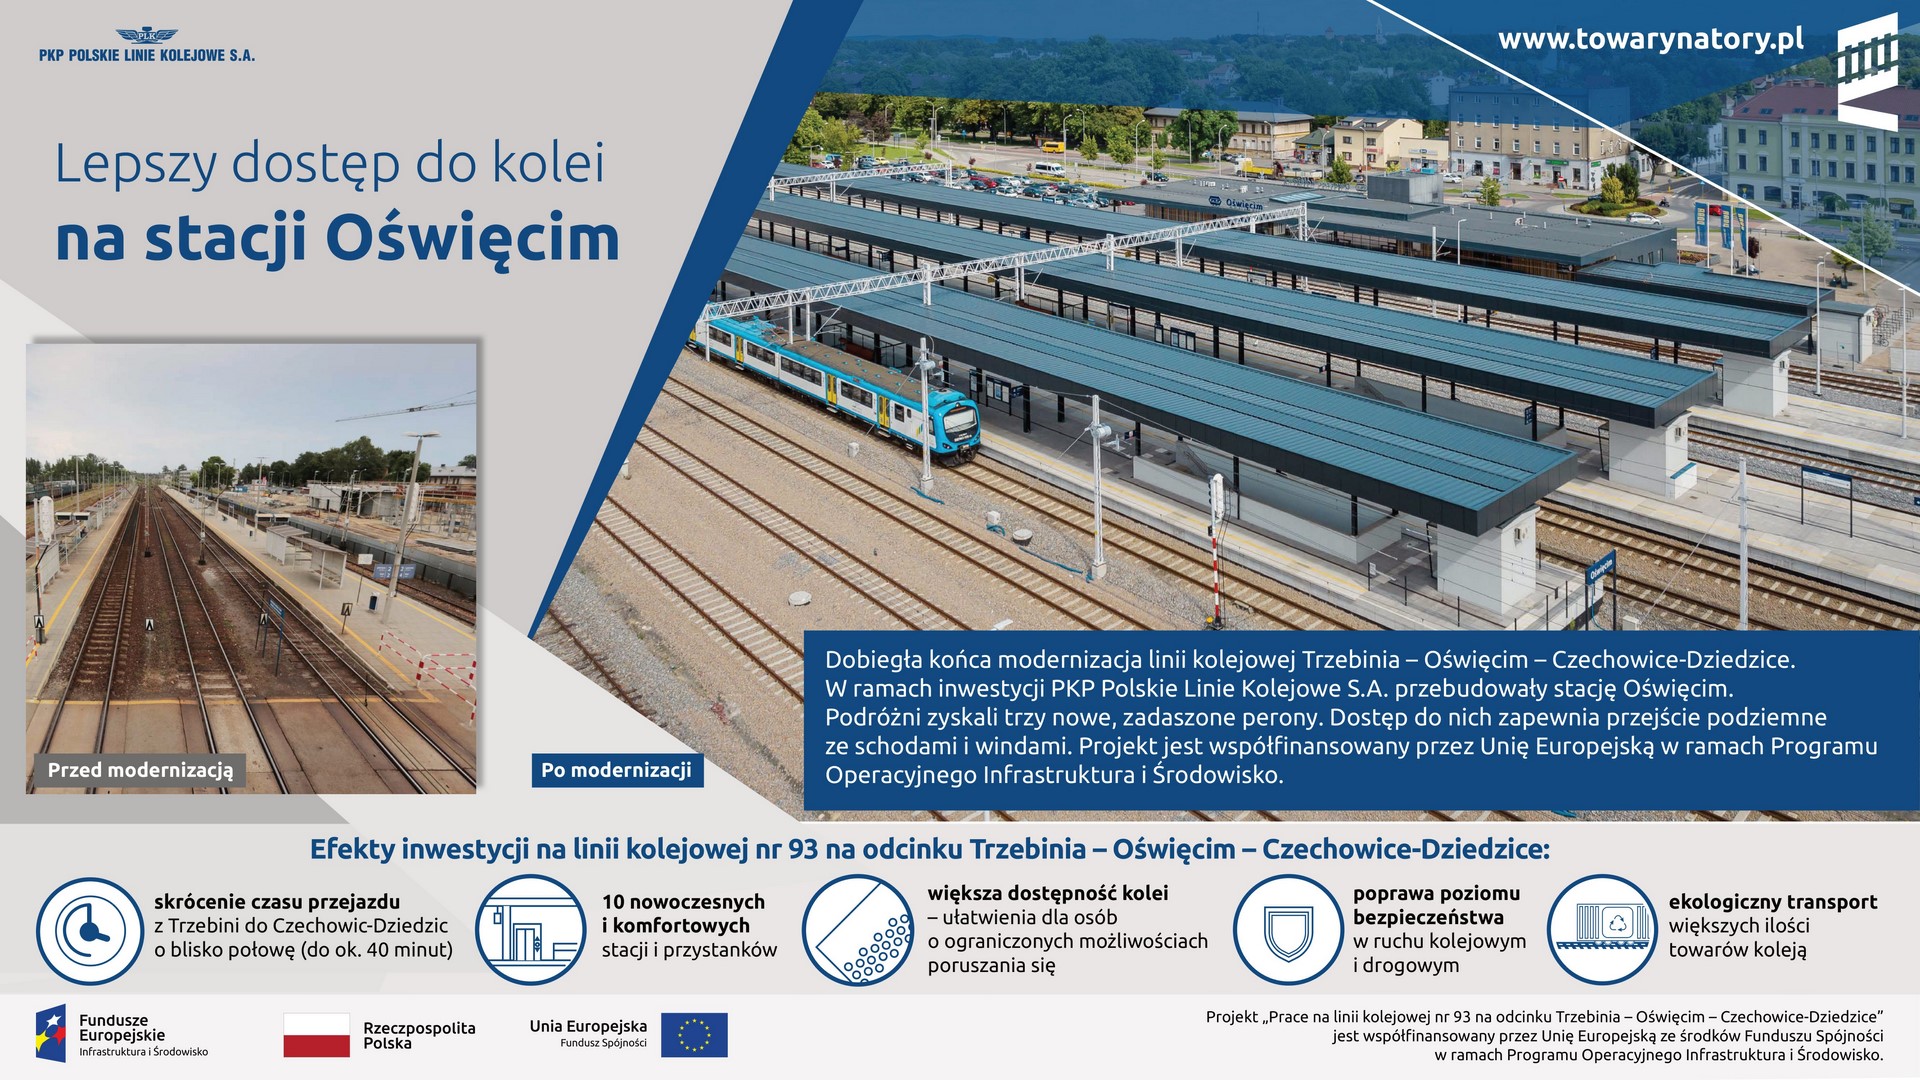 Infografika mówi o modernizacji stacji Oświecim.